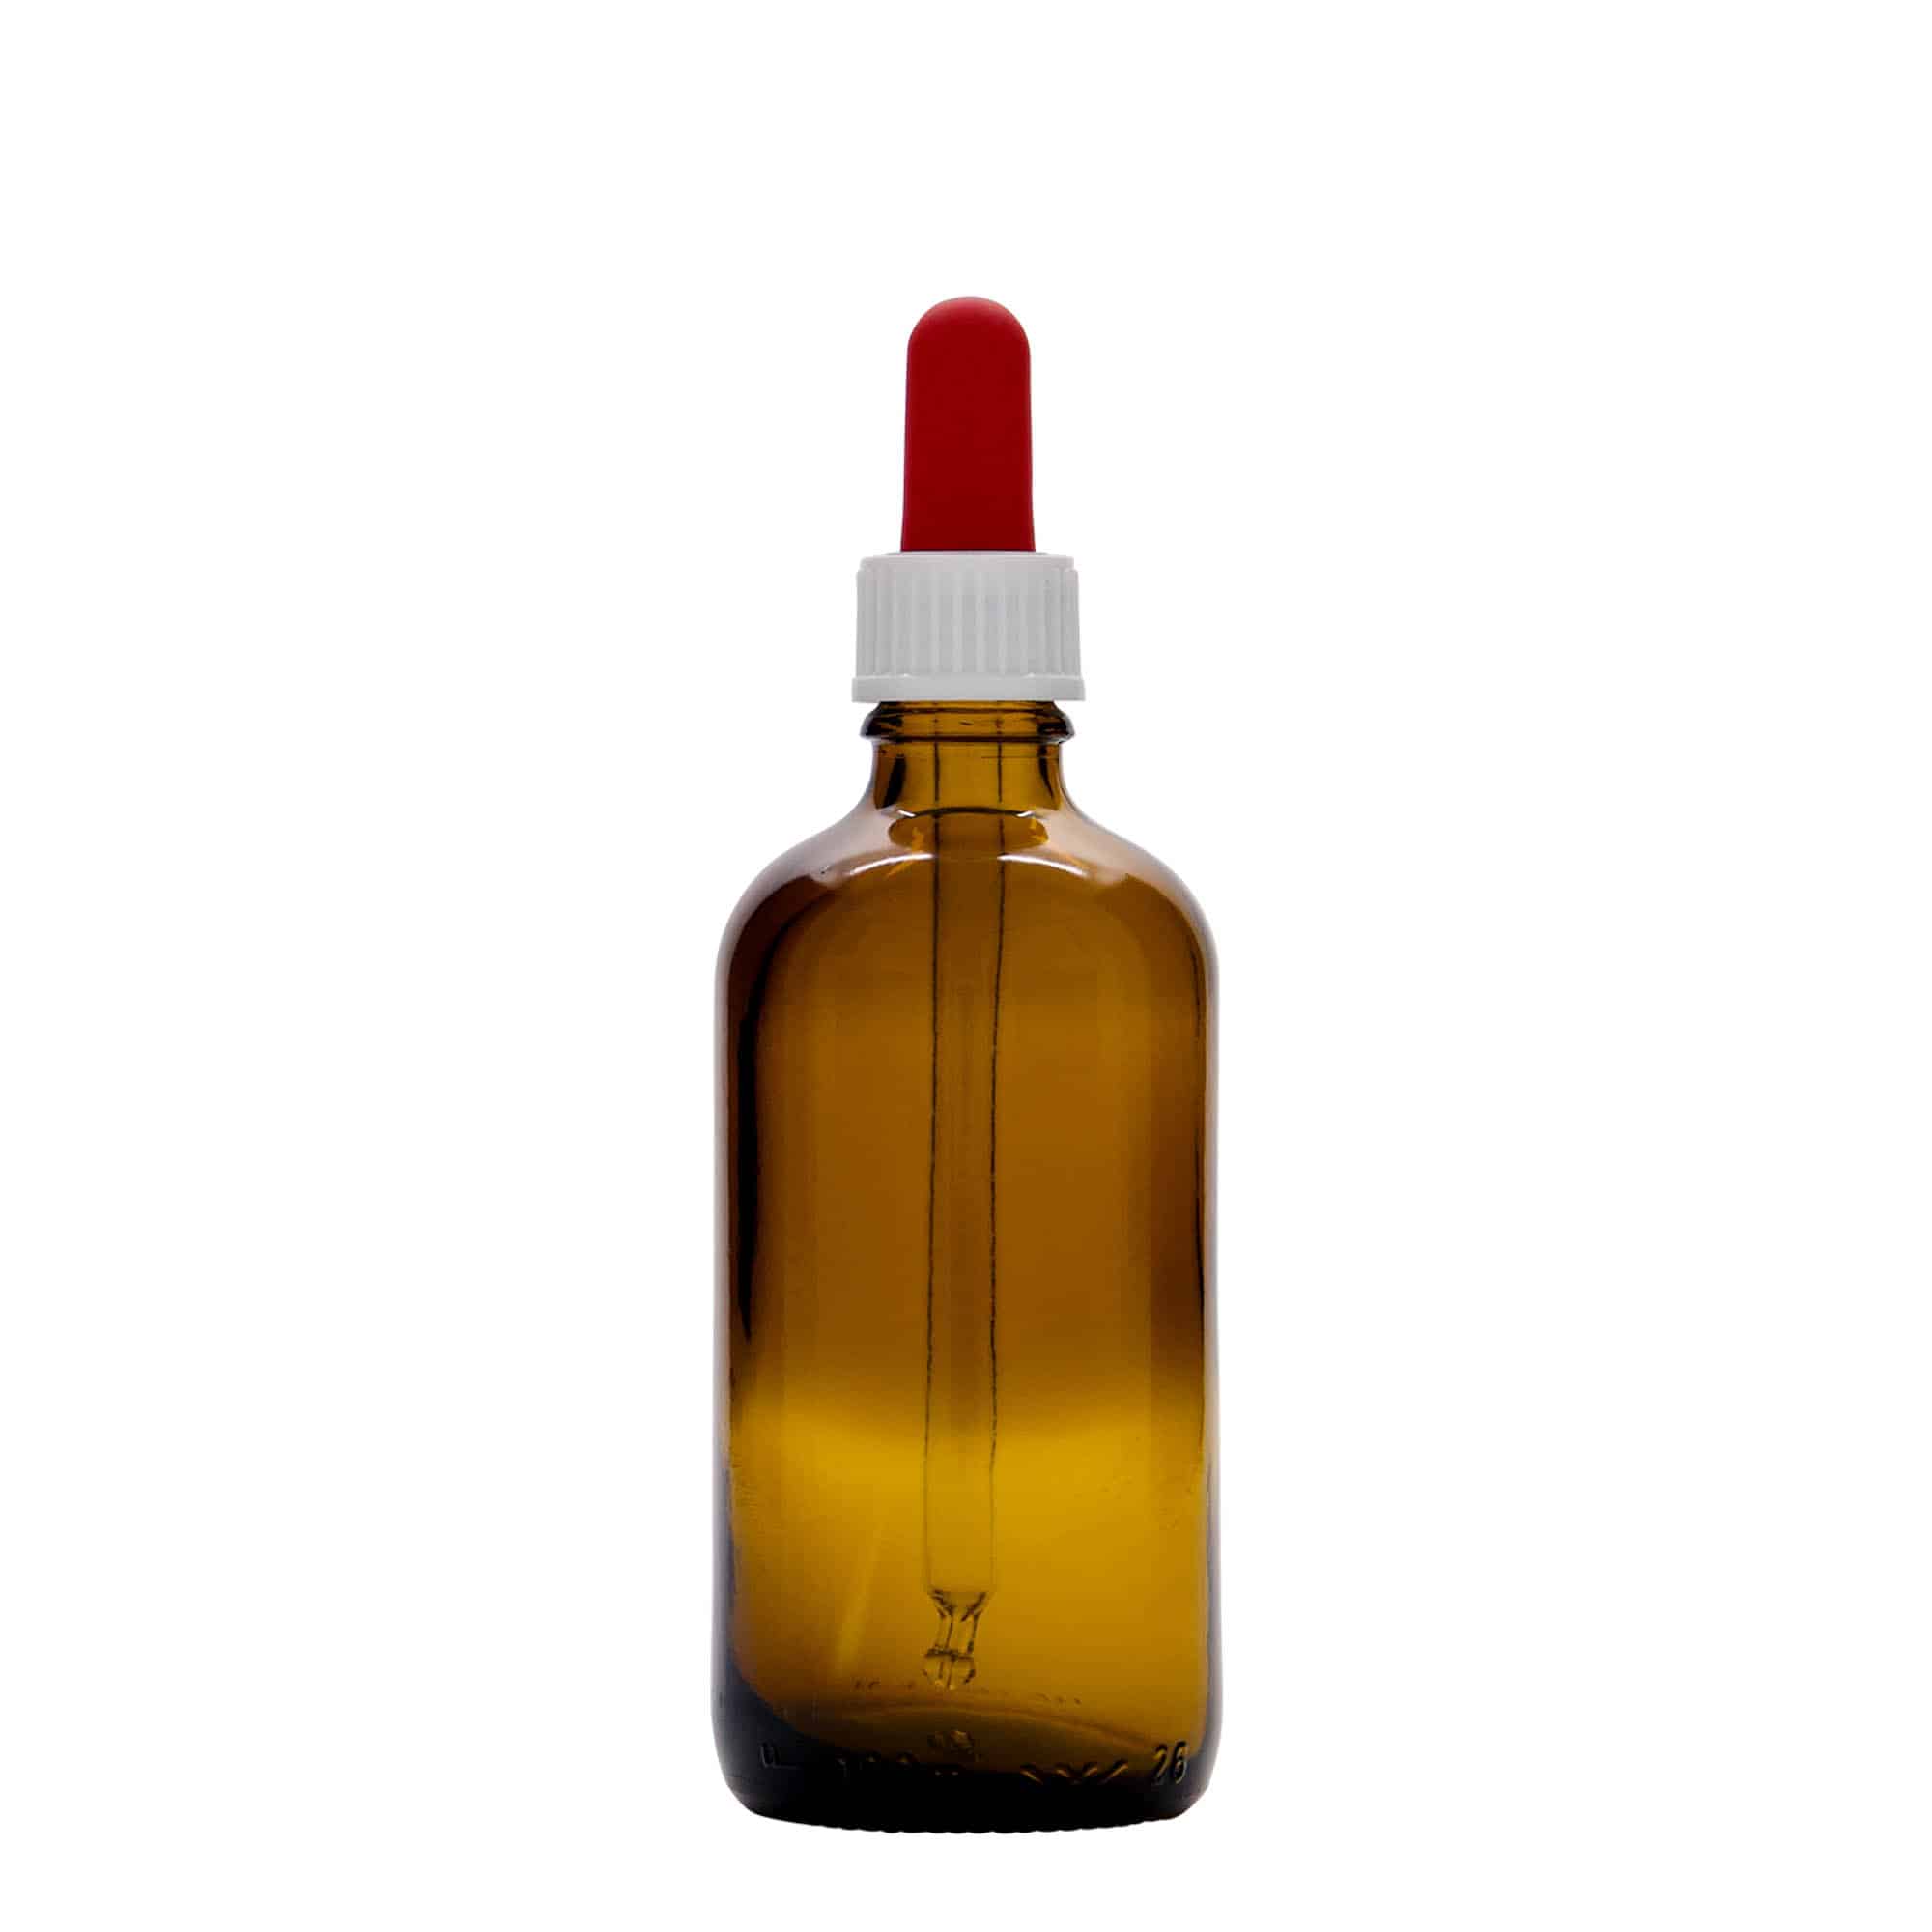 Flacon compte-gouttes médical 100 ml, verre, marron-rouge, bouchage: DIN 18